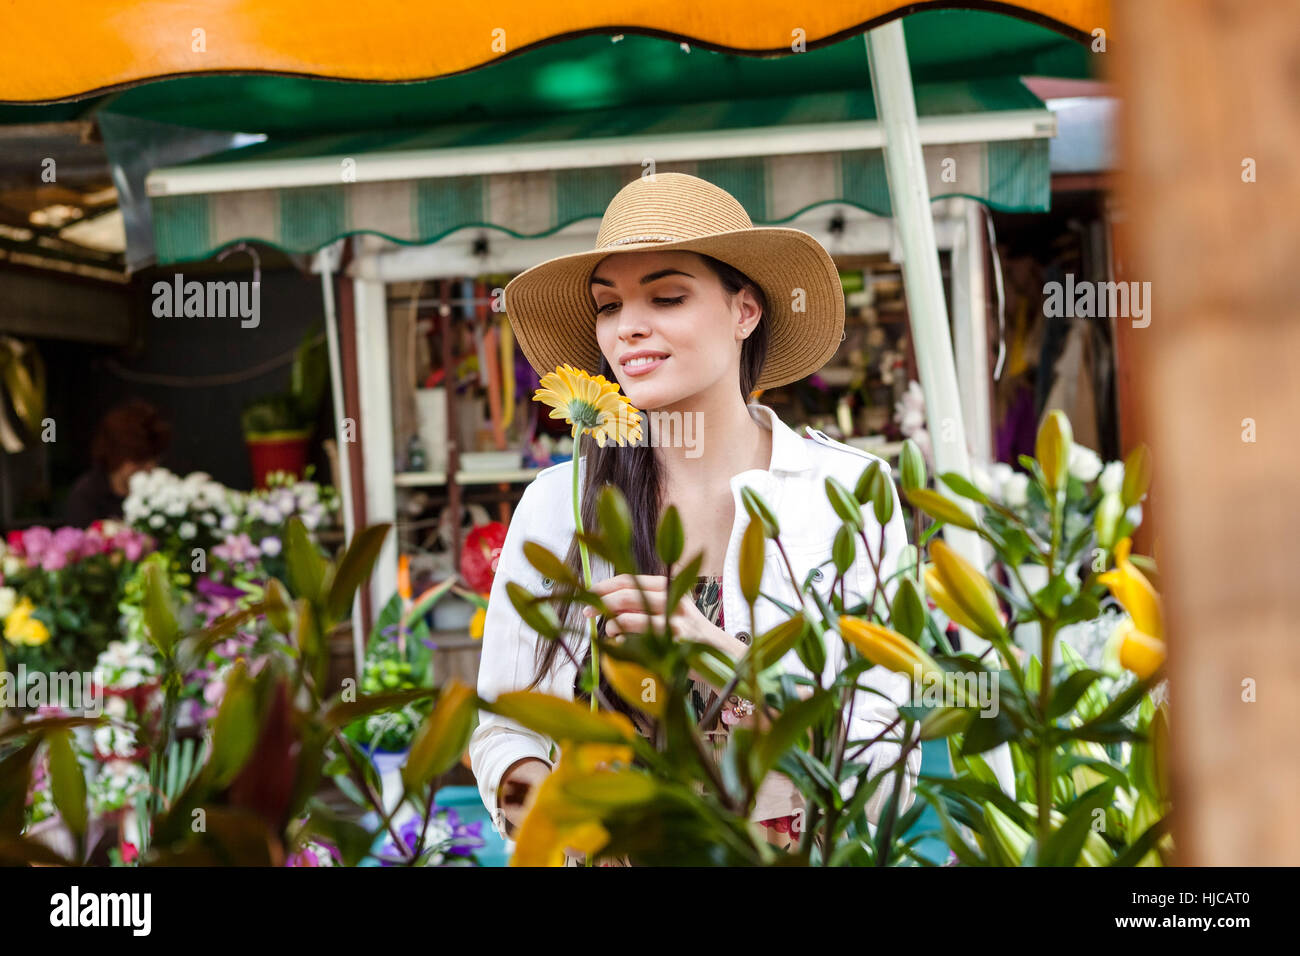 Junge weibliche Touristen riechenden Blumen am Marktstand, Split, Dalmatien, Kroatien Stockfoto